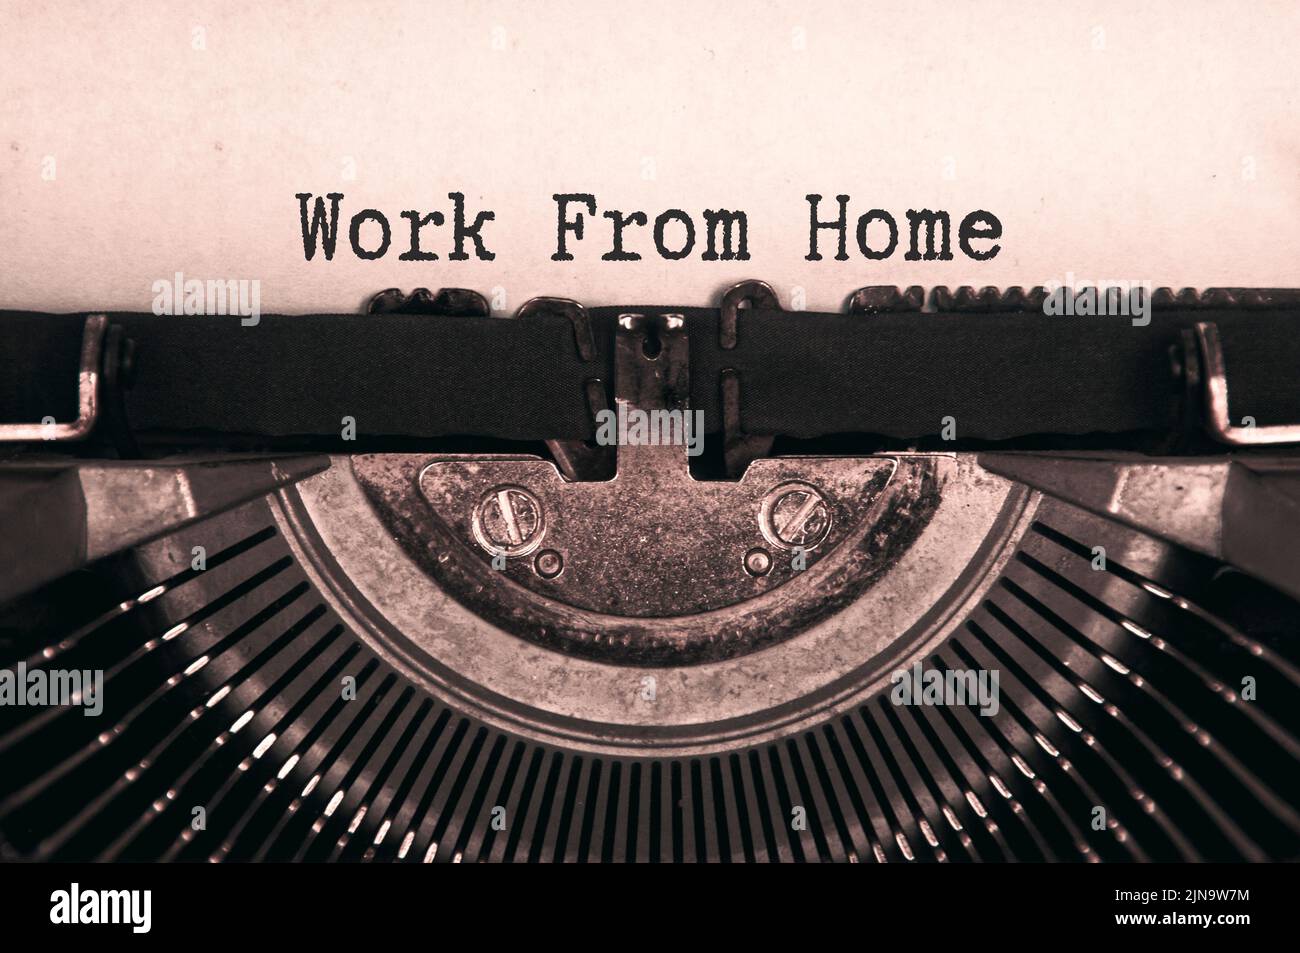 Lavoro da casa testo digitato su una vecchia macchina da scrivere vintage in bianco e nero. Foto Stock